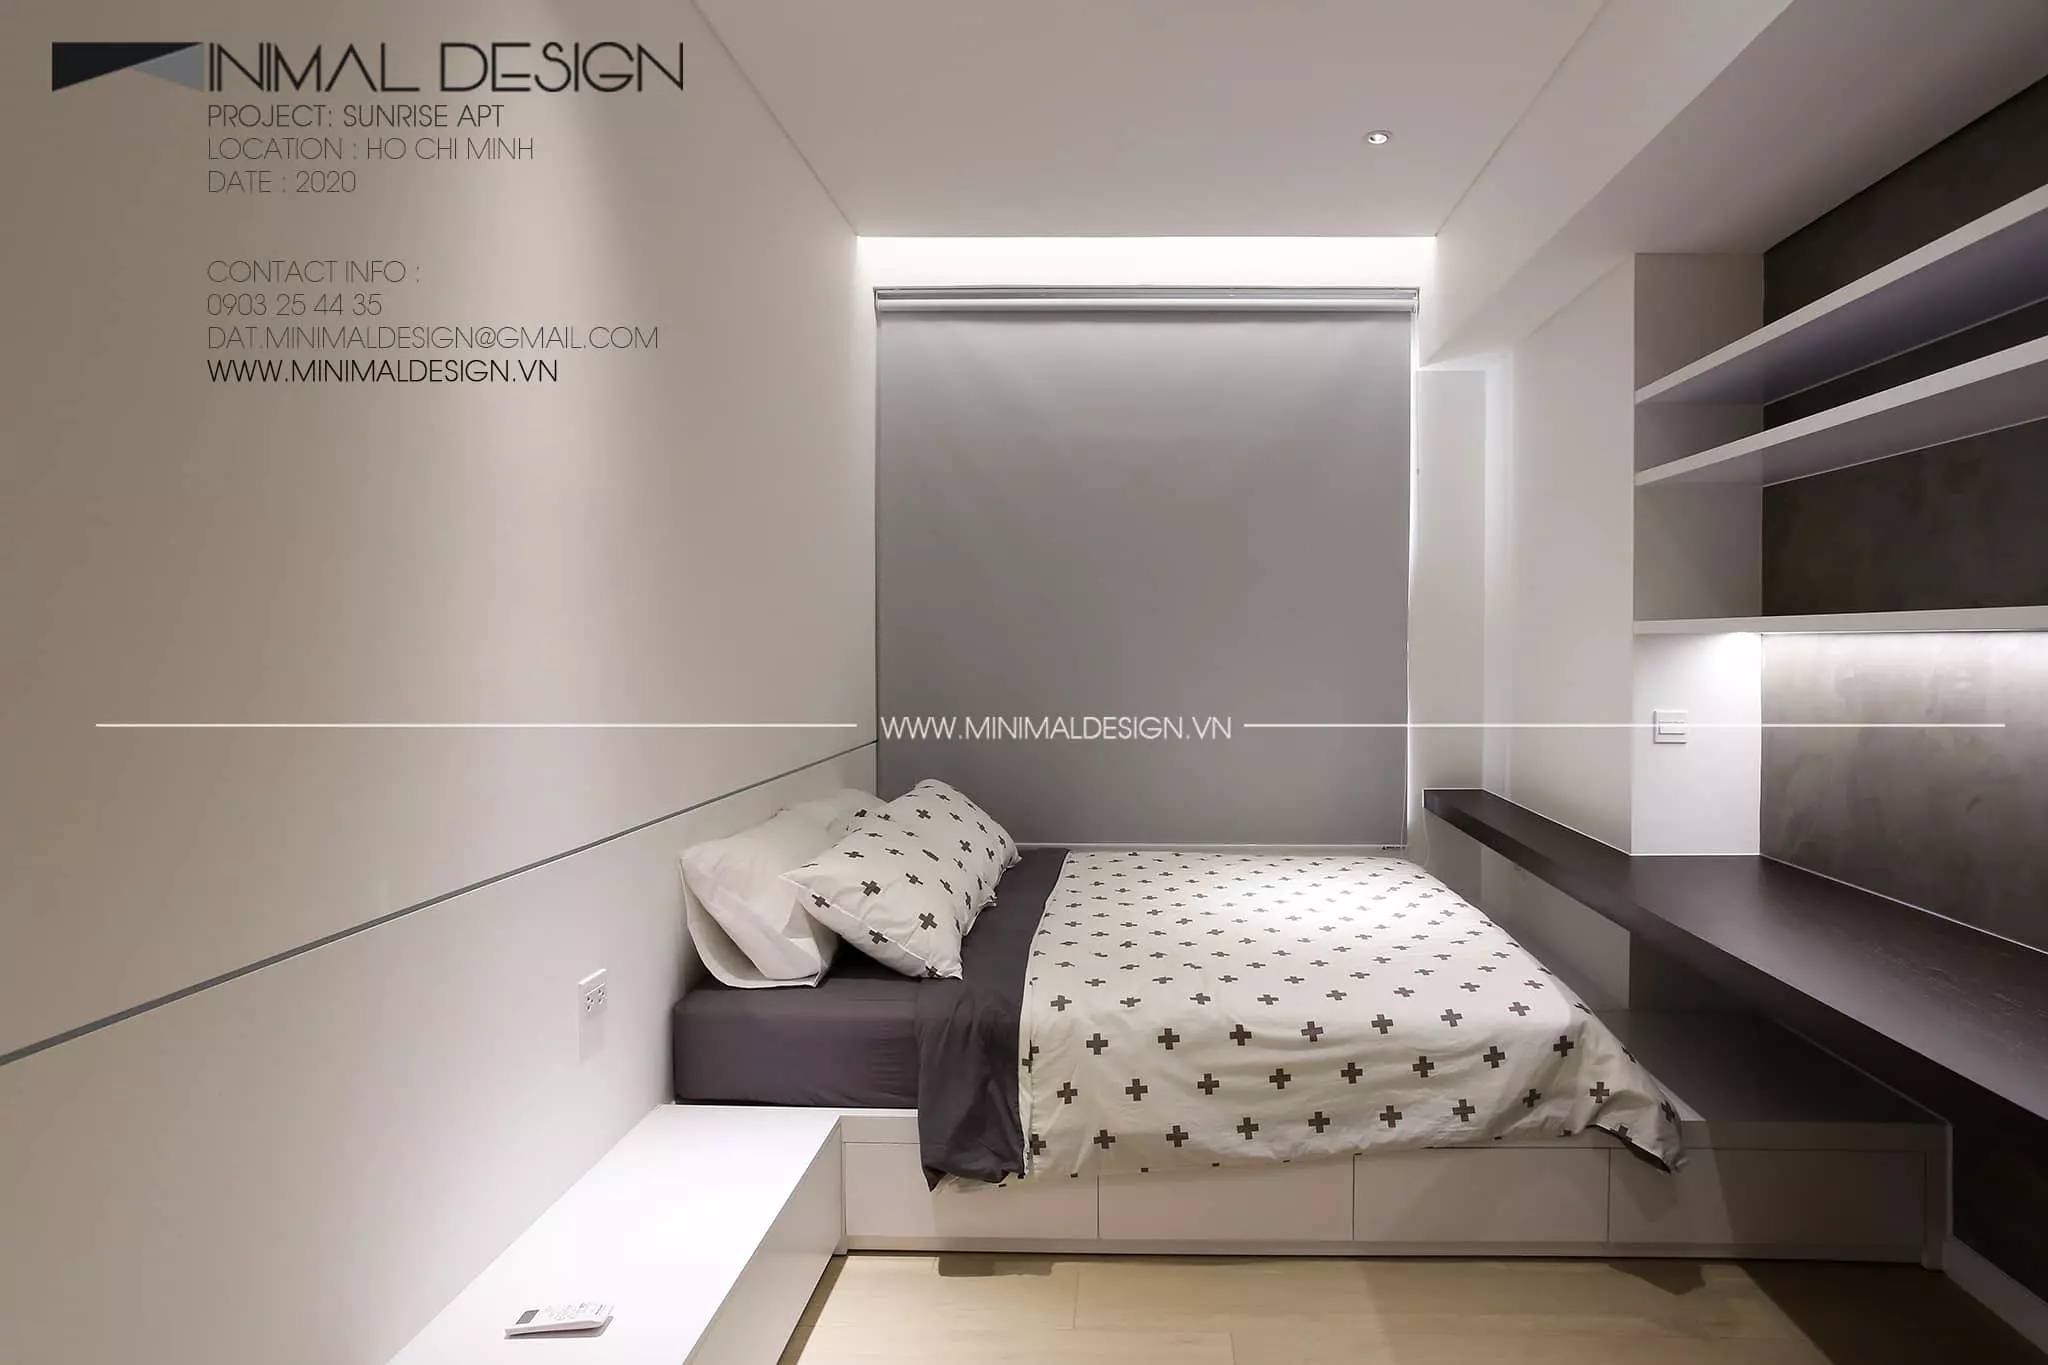 Thiết kế phòng ngủ tối giản đẹp và sang trọng rất được ưa chuộng bởi vẻ đẹp tinh giản, nhẹ nhàng, thông thoáng và đầy tiện nghi.